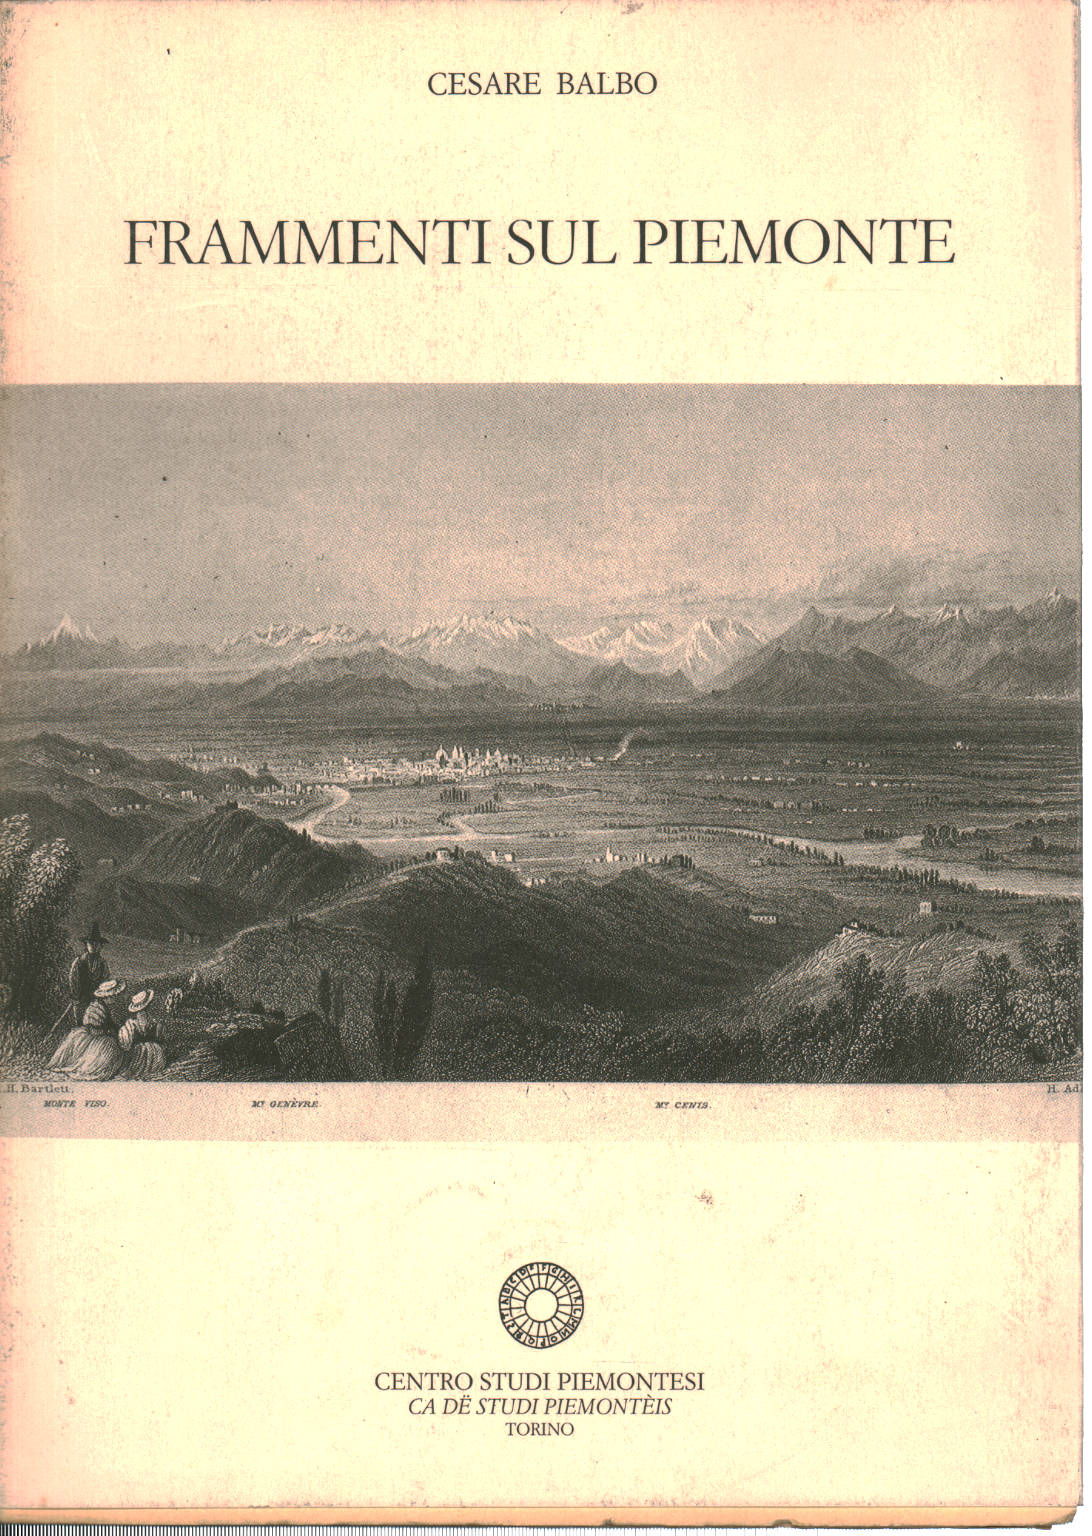 Fragments sur le Piémont, Cesare Balbo